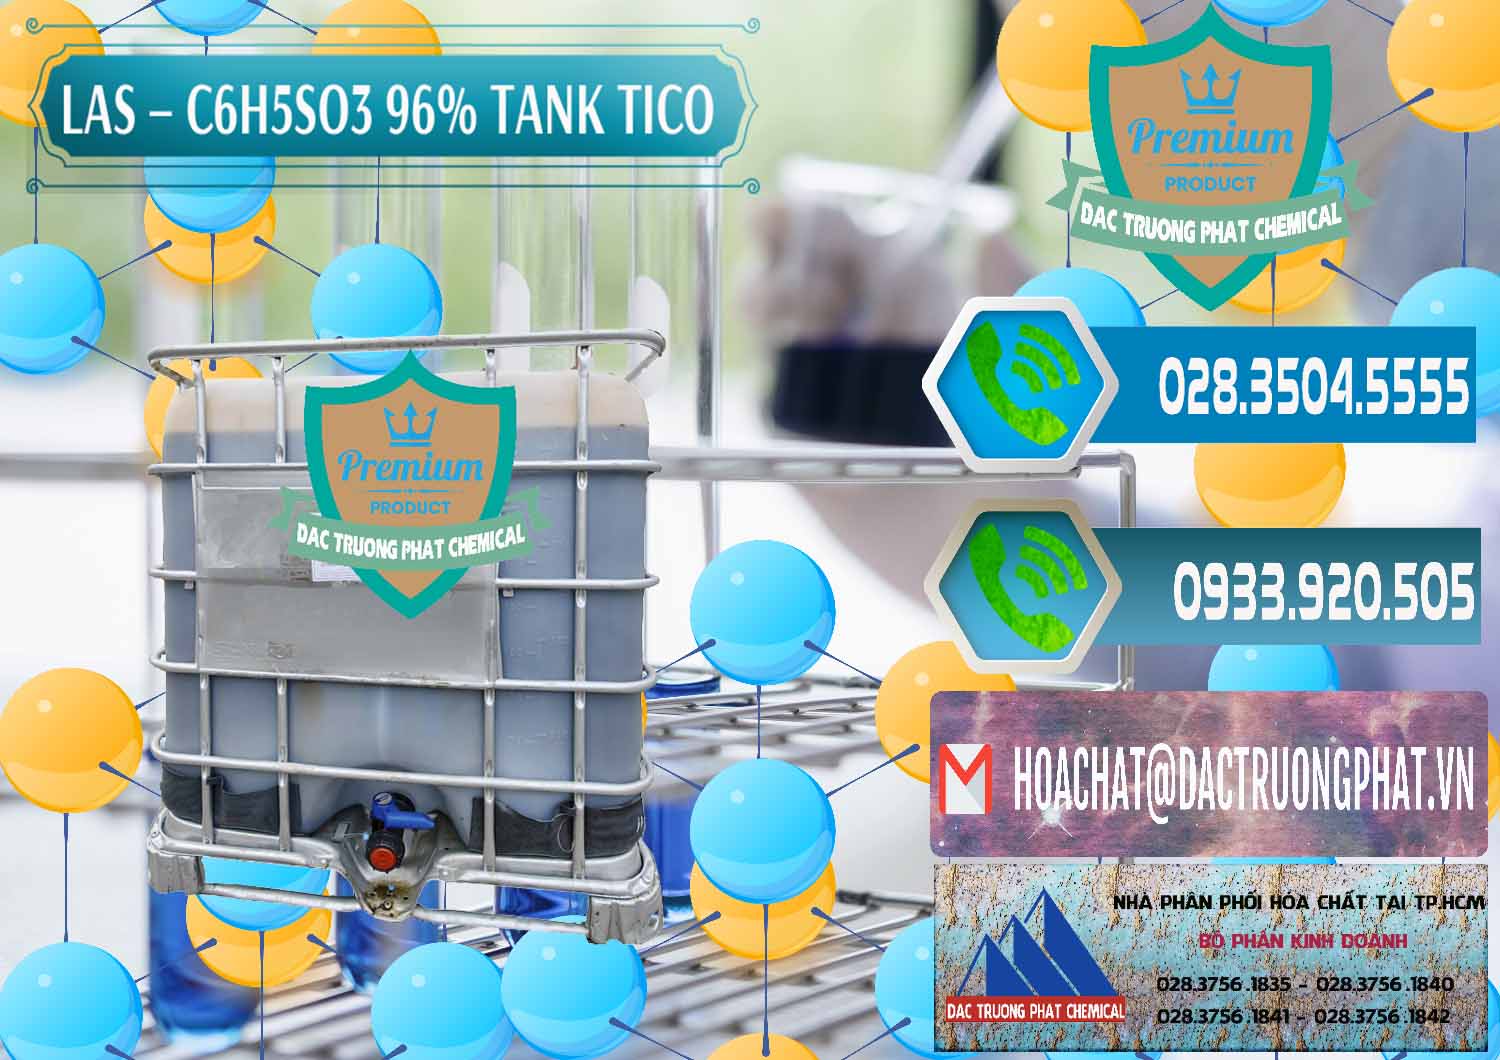 Nơi kinh doanh ( bán ) Chất tạo bọt Las P Tico Tank IBC Bồn Việt Nam - 0488 - Chuyên phân phối _ cung cấp hóa chất tại TP.HCM - congtyhoachat.net